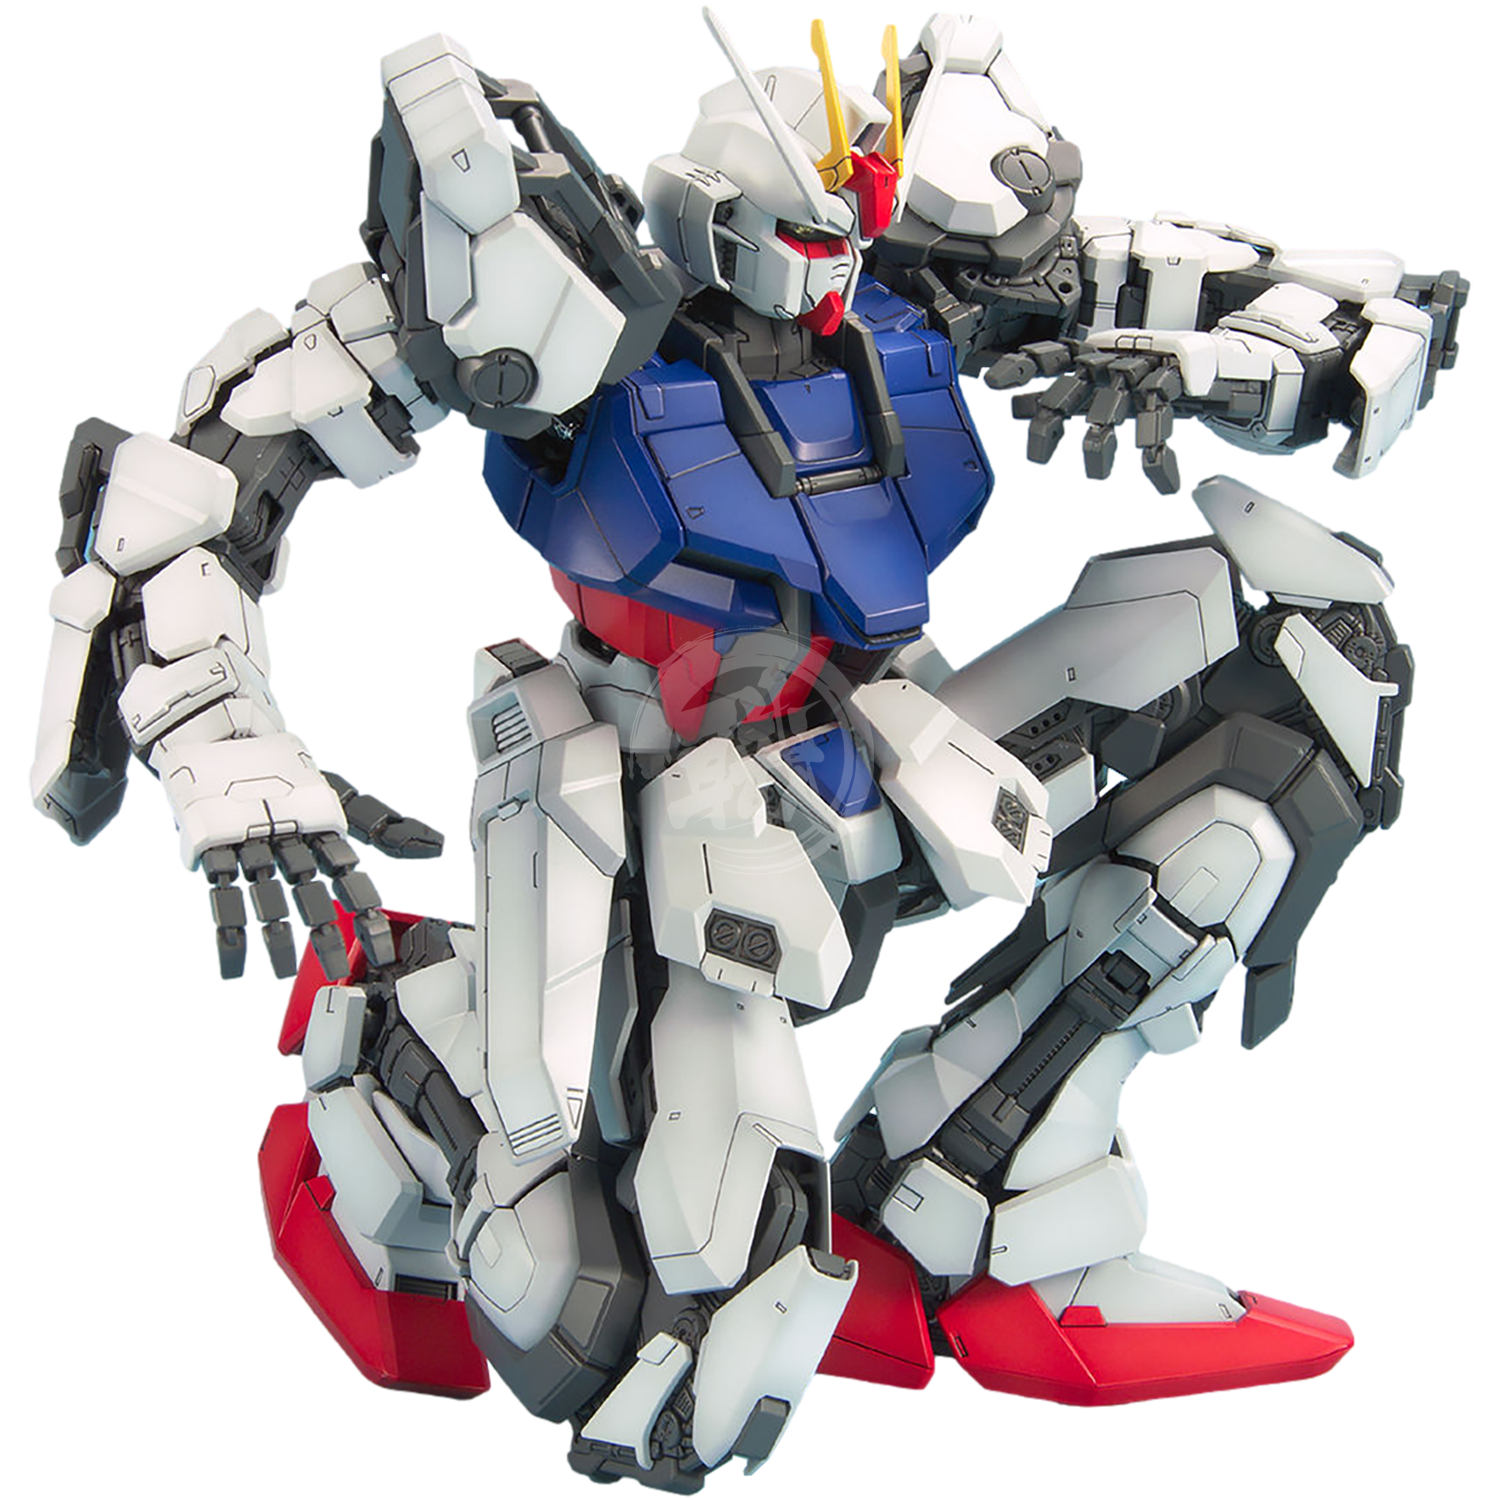 PG Strike Gundam - ShokuninGunpla